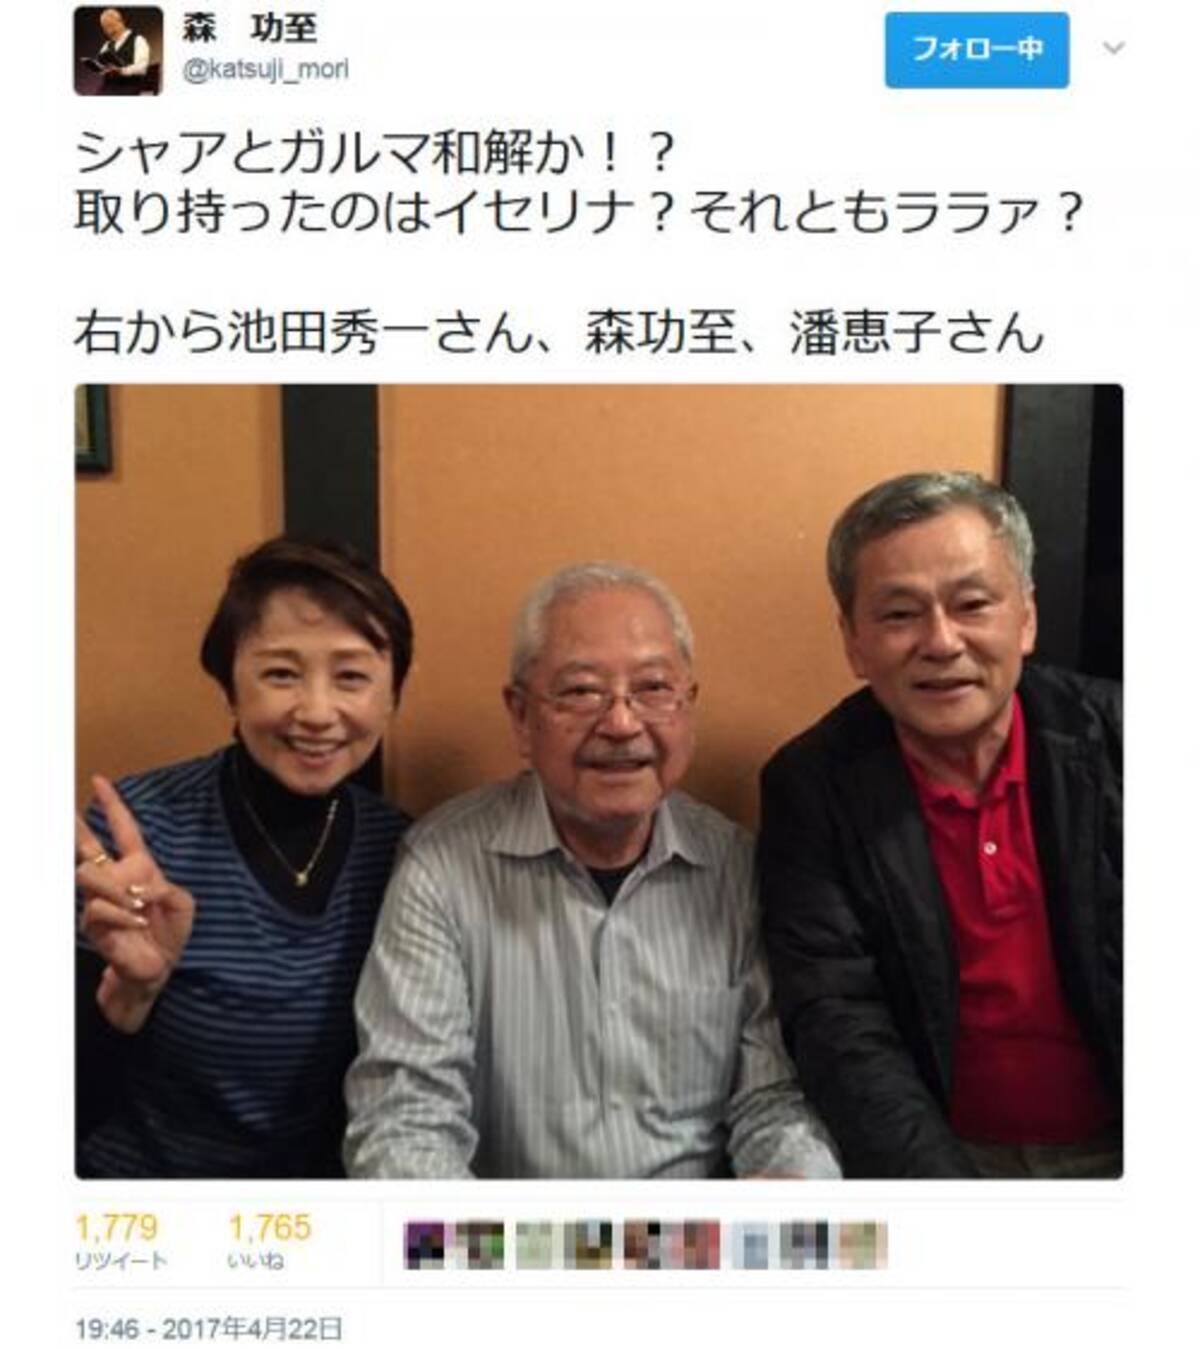 シャアとガルマ和解か 森功至さんの Twitter に池田秀一さん 潘恵子さんとの画像 17年4月24日 エキサイトニュース